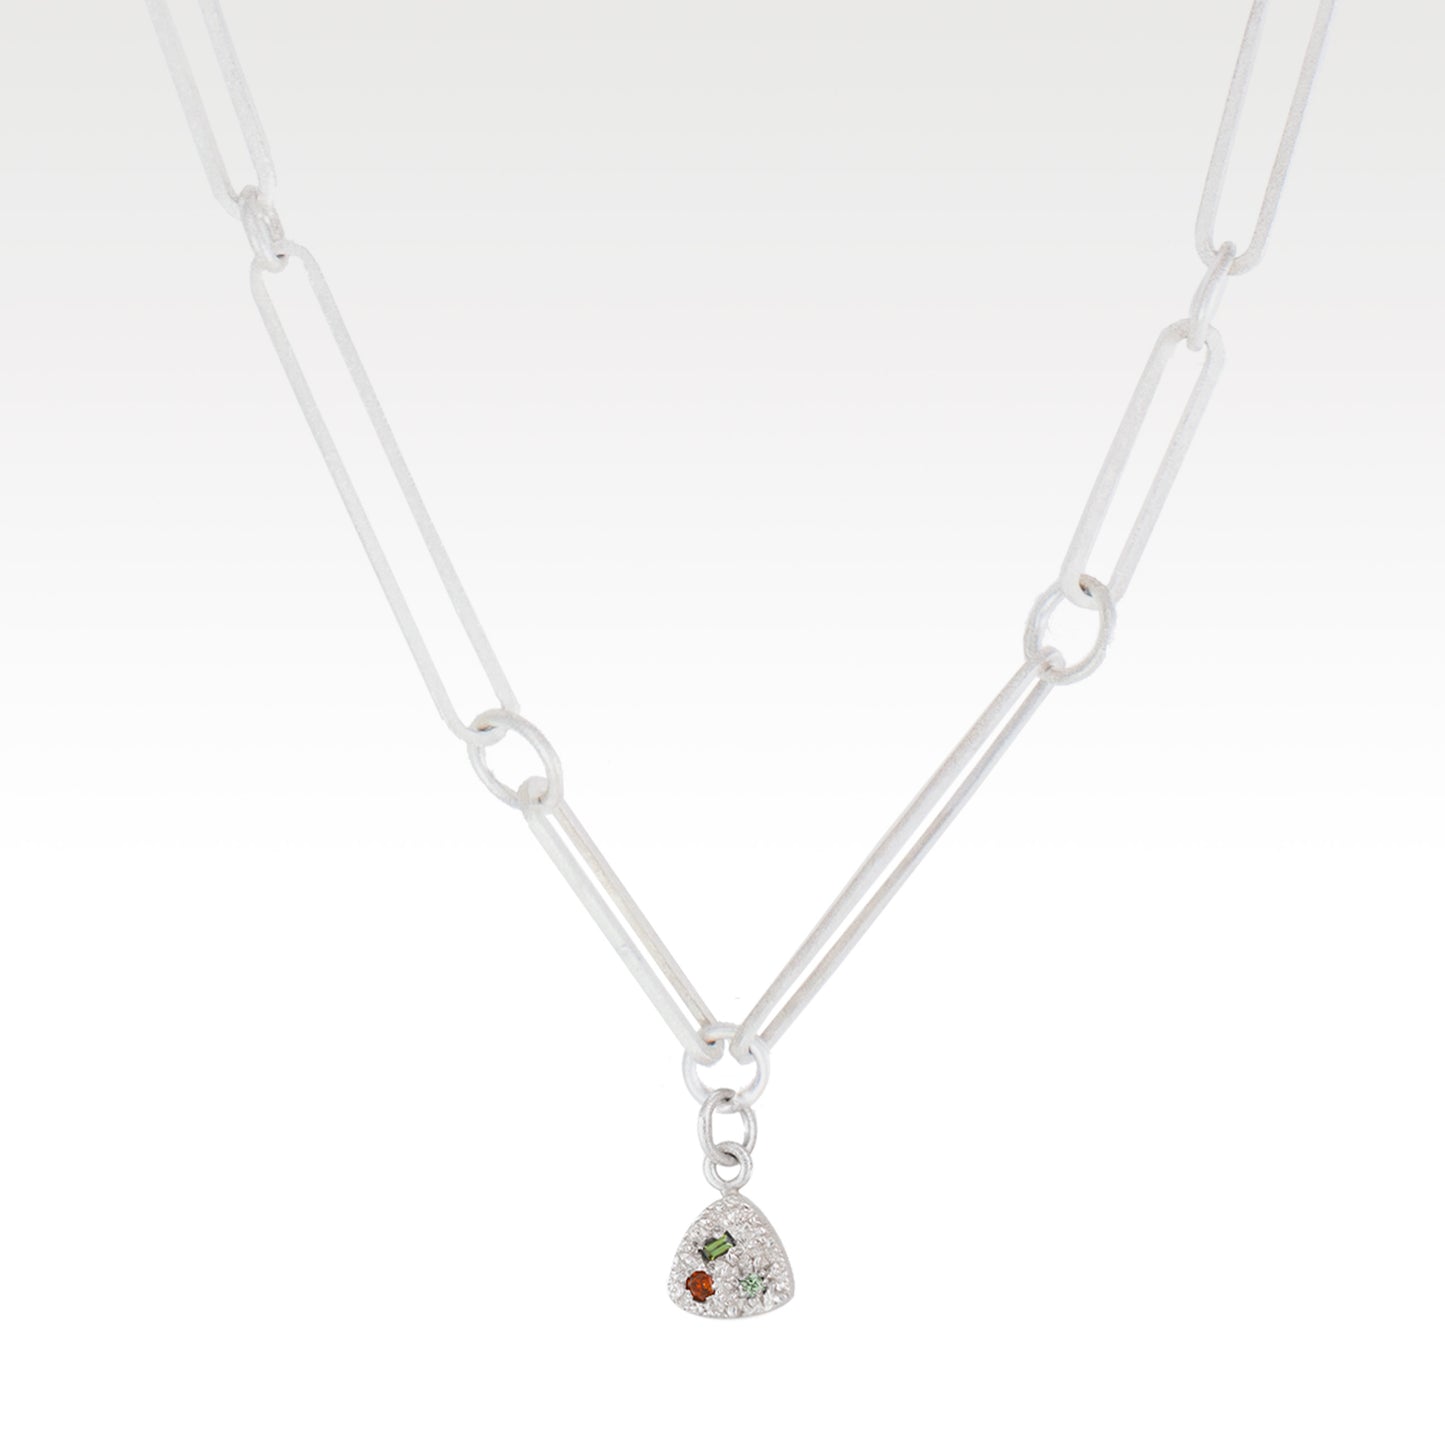 SCOTT MILLAR - Sussex Necklace with Citrine, Tourmaline & Sapphire in Silver